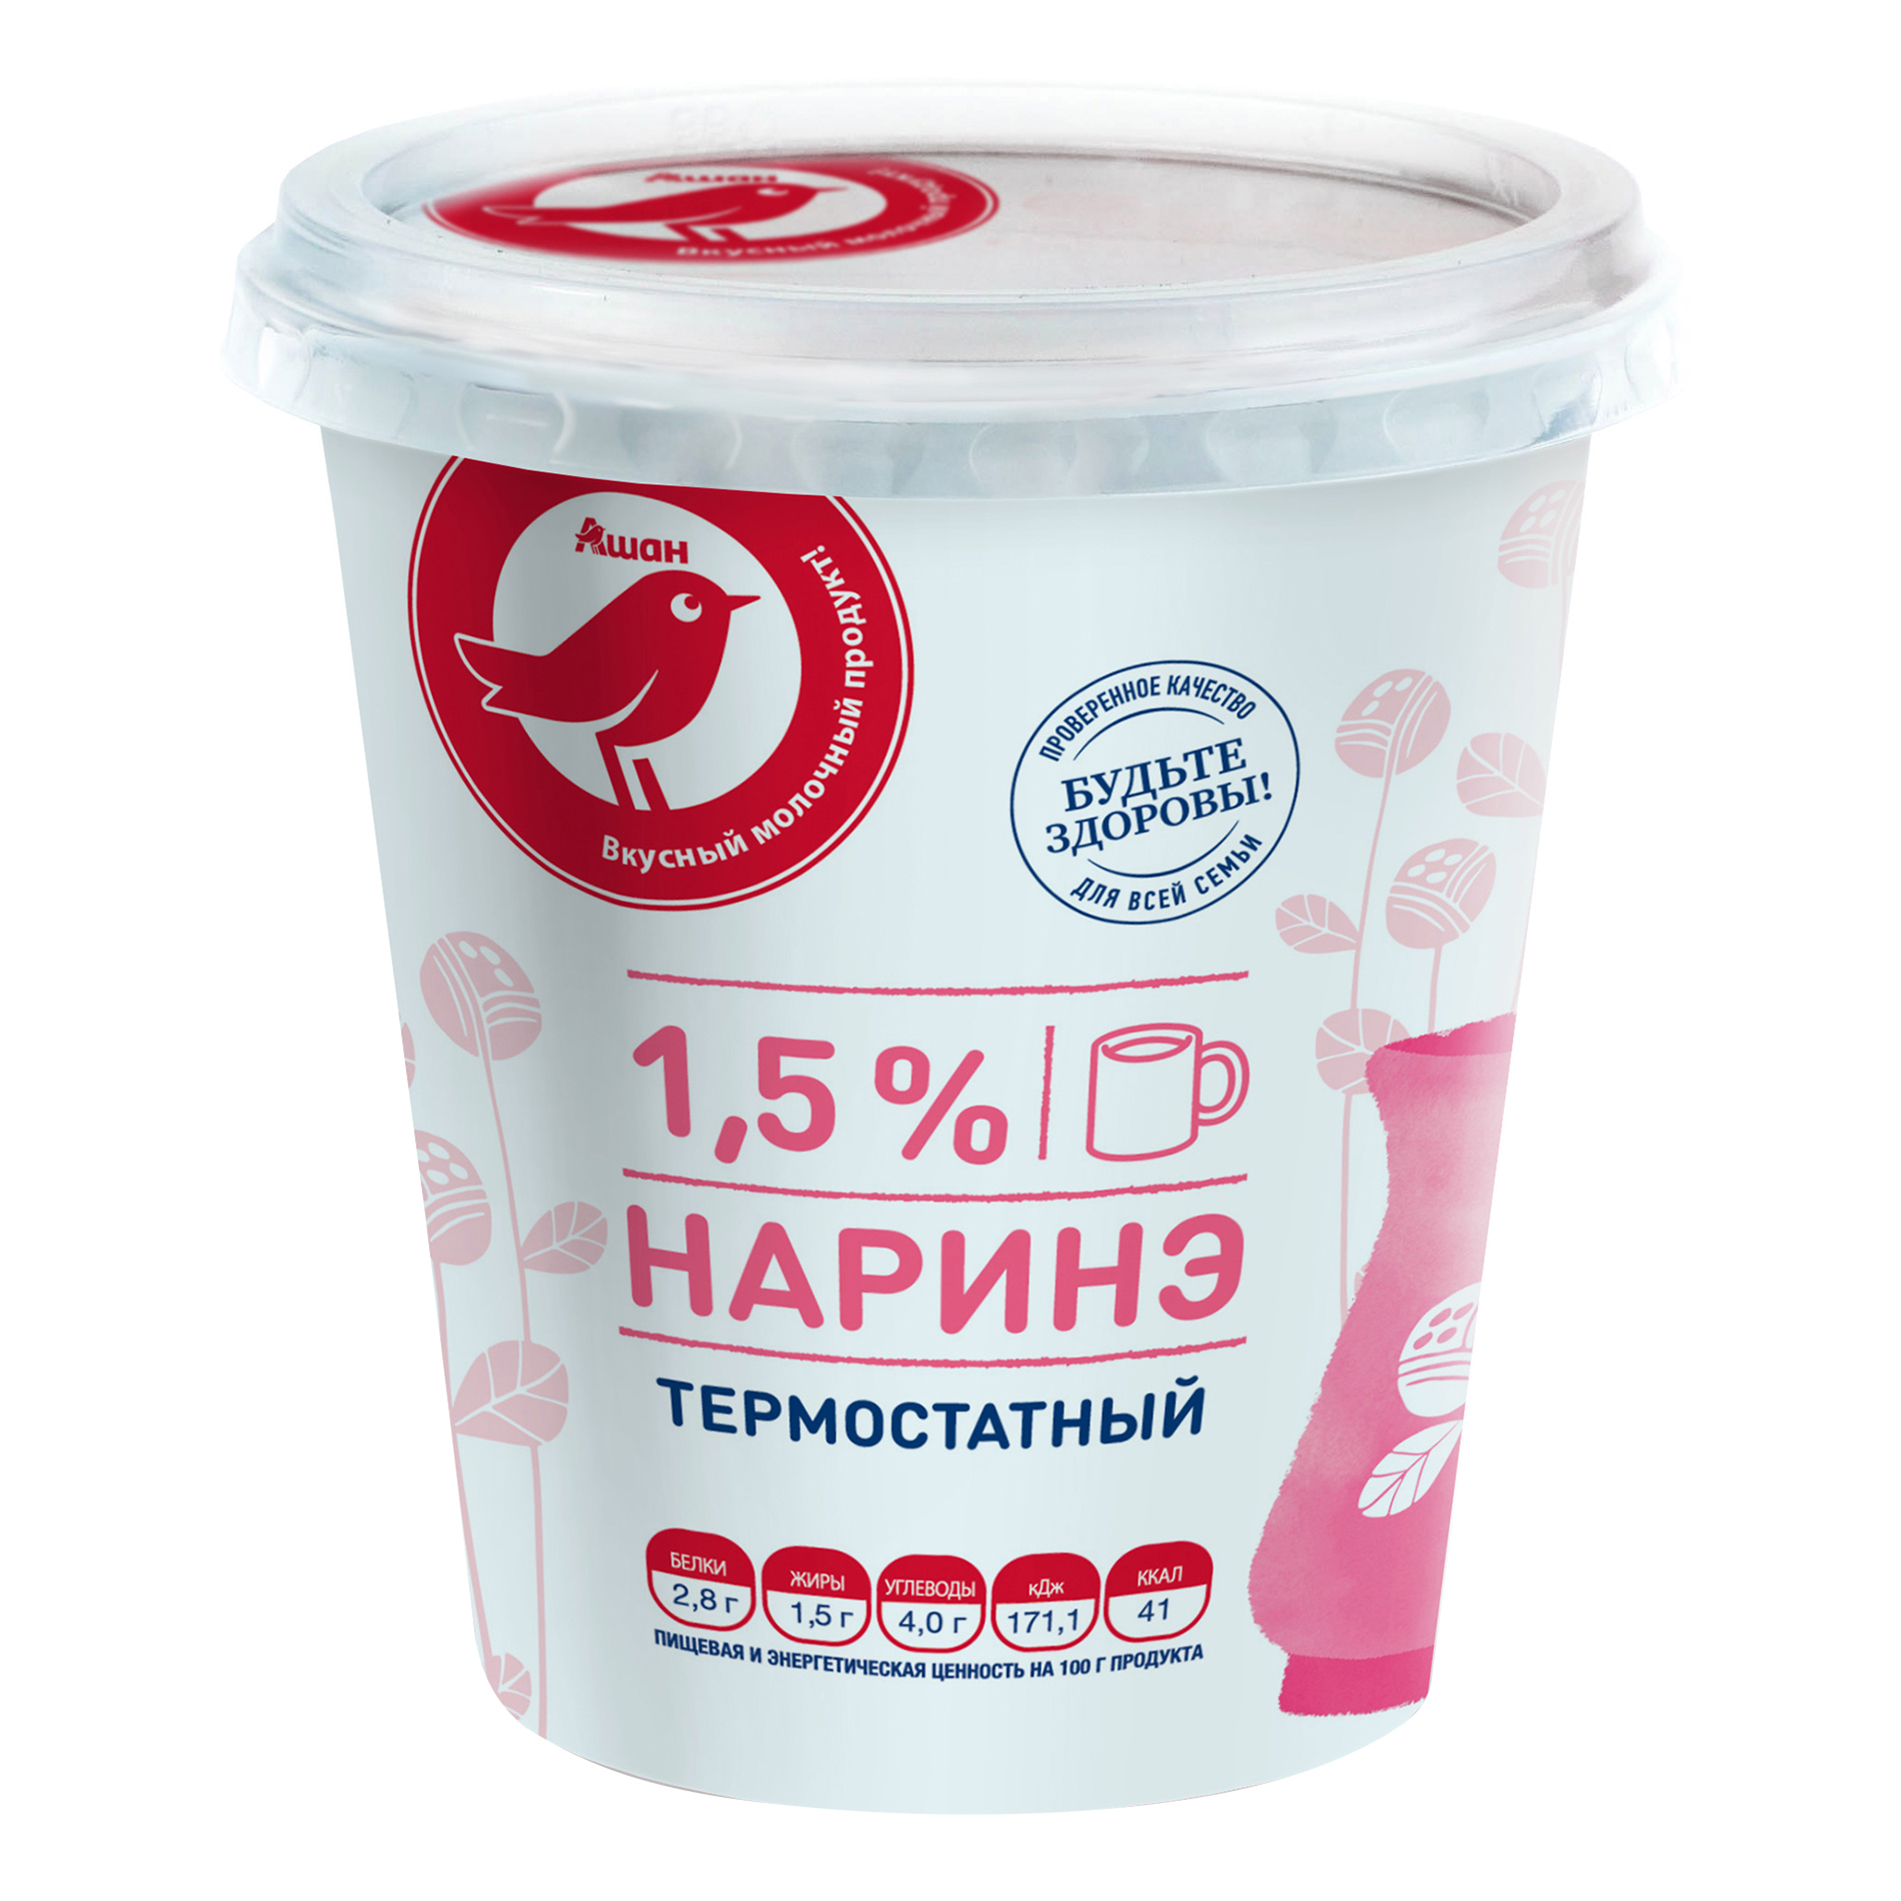 Продукт кисломолочный АШАН Красная птица Наринэ термостатный 1,5% 350 г